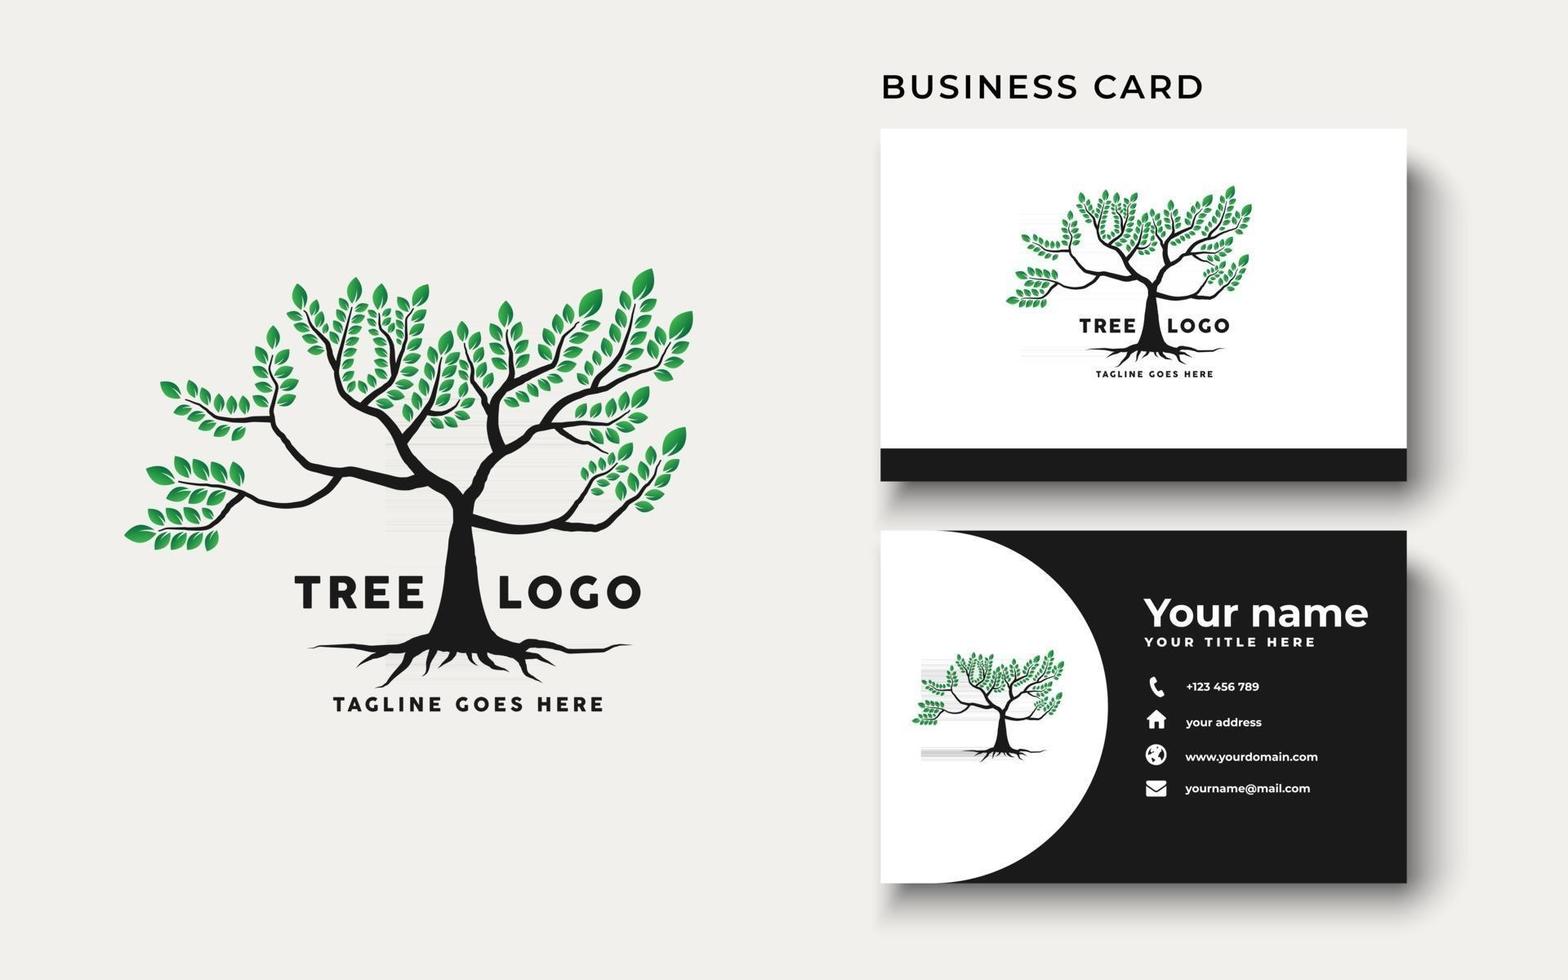 inspiración del diseño del logotipo de la raíz del árbol vector